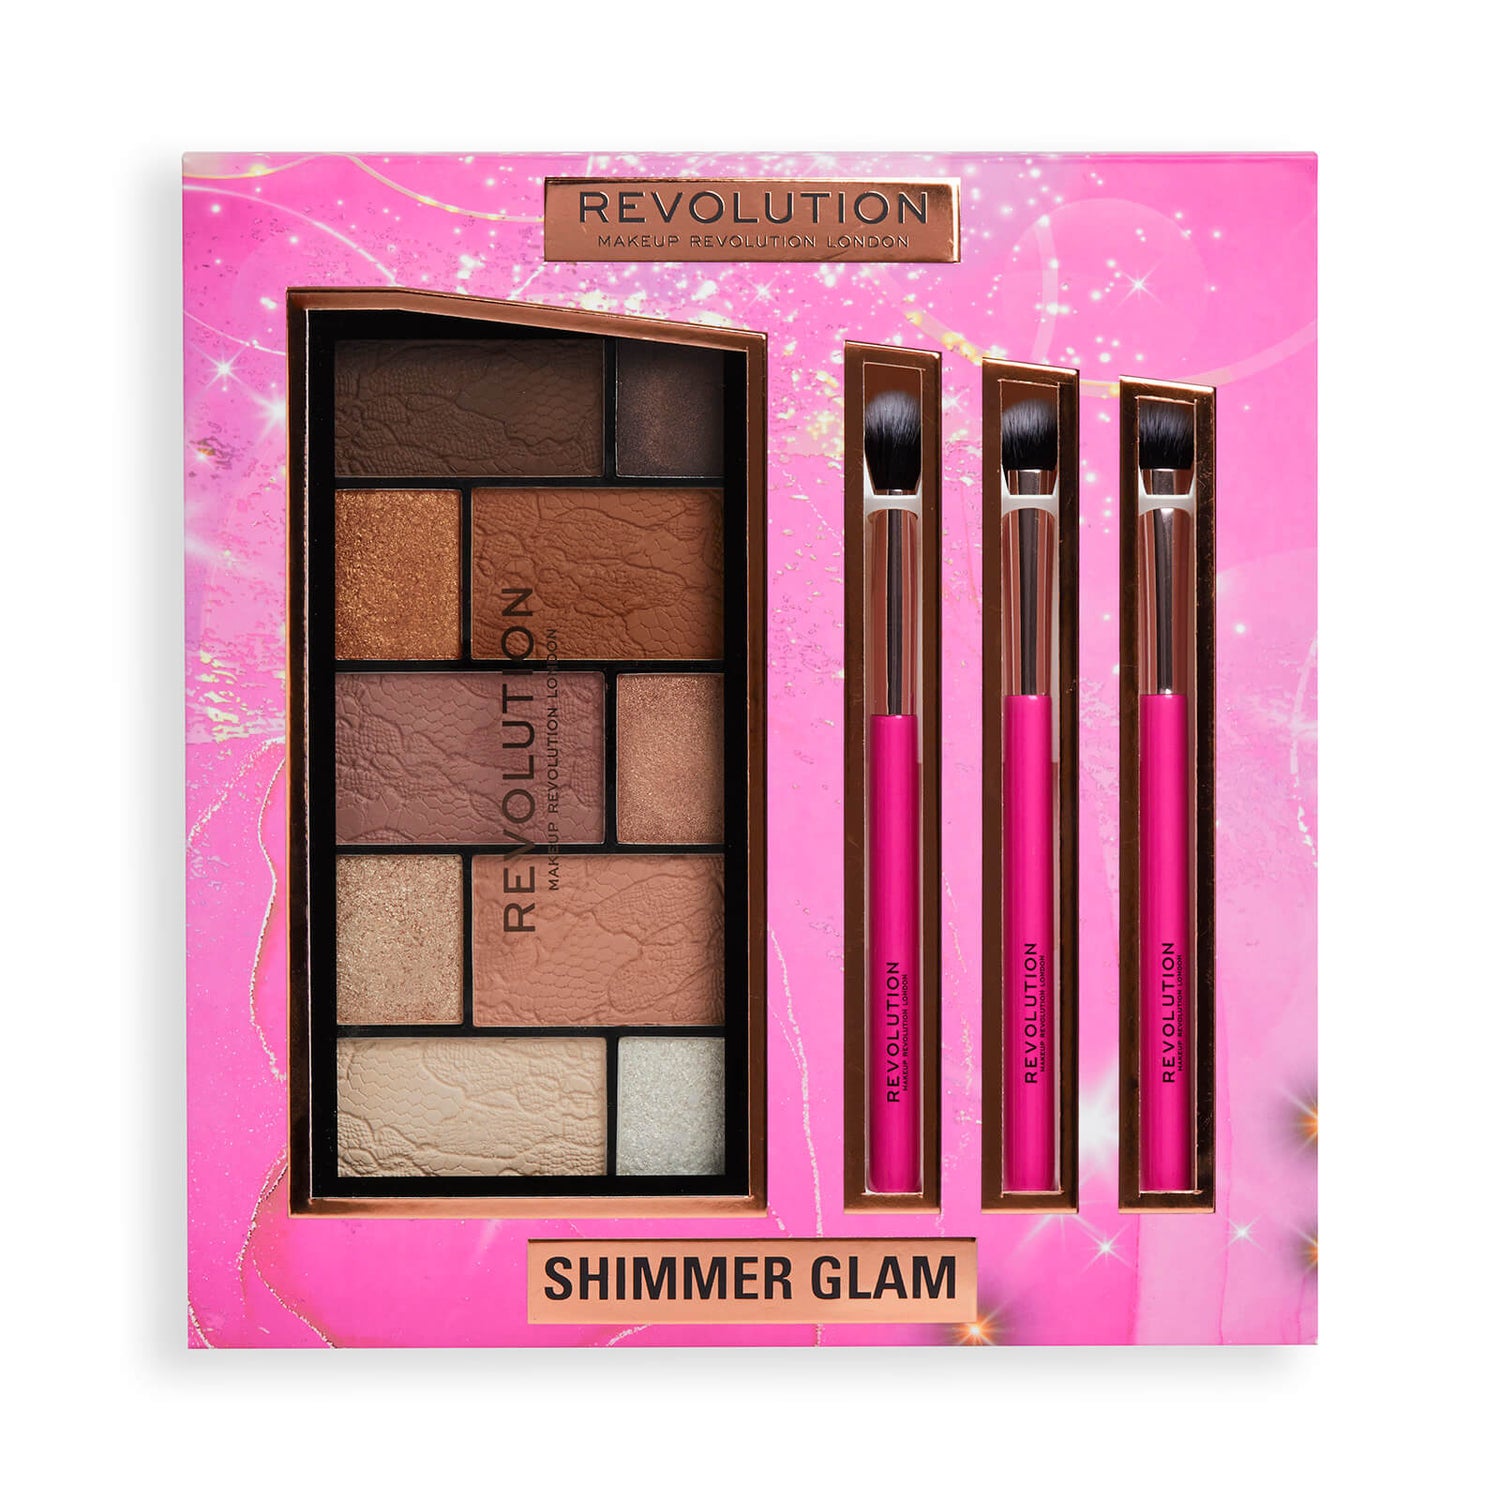 Revolution Shimmer Glam Eye Set Gift Set (Worth $28.00)